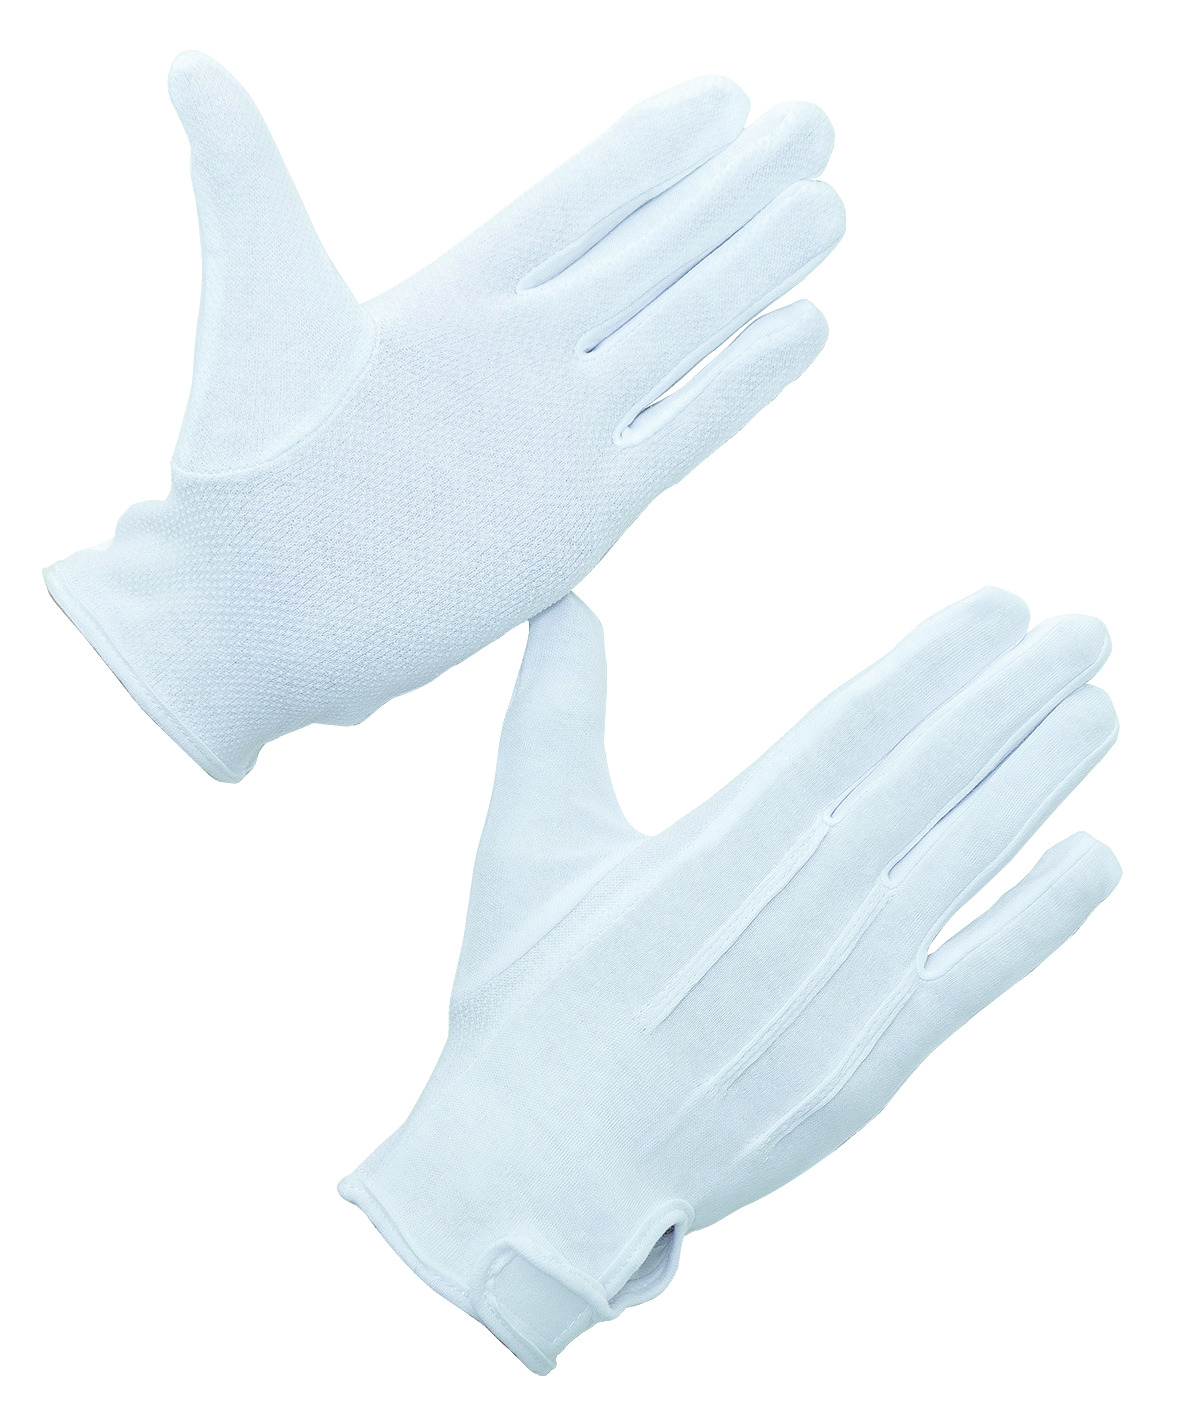 Găng tay vải cotton mảnh